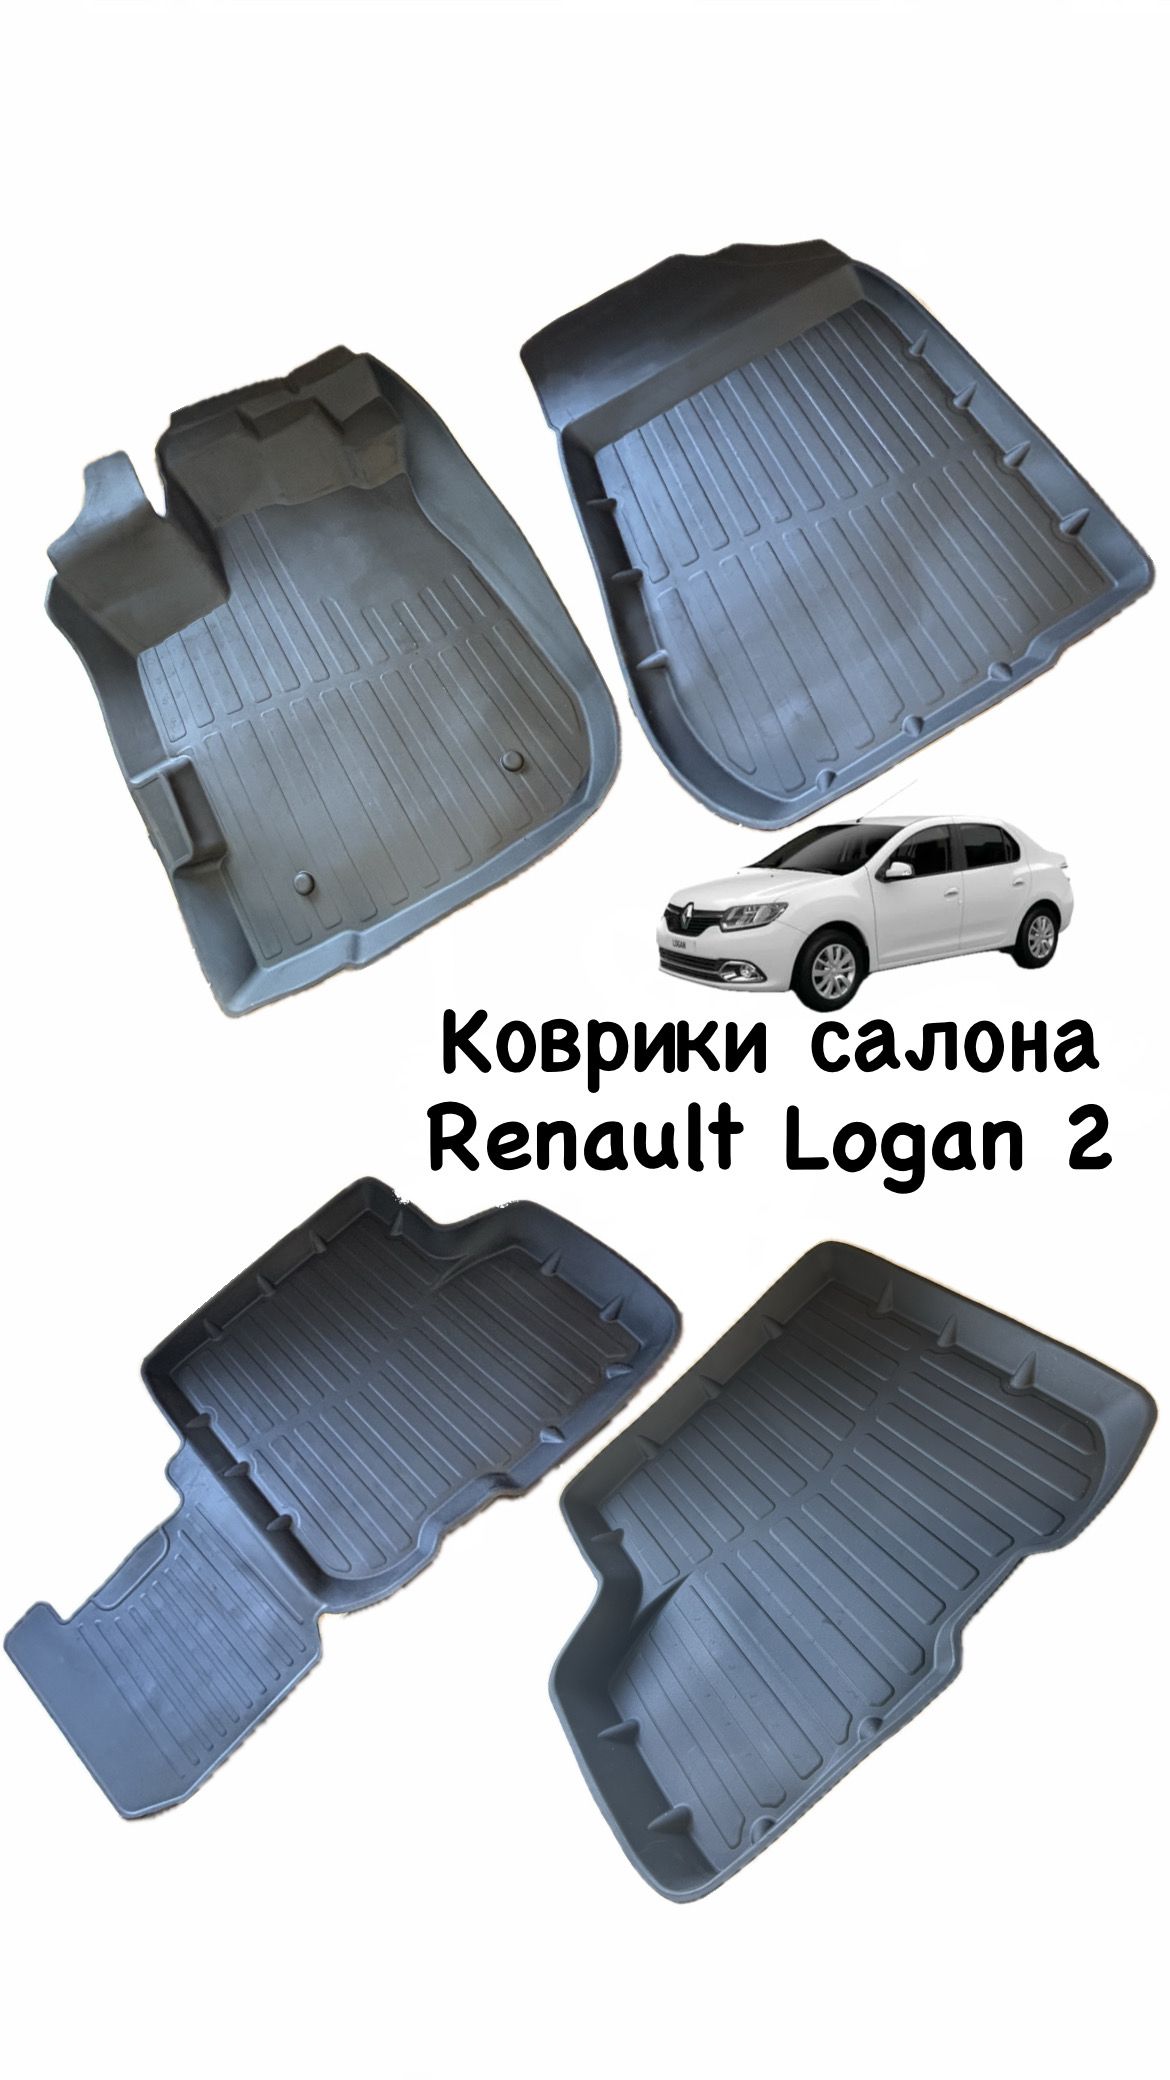 Коврики(комплект4шт)РеноЛоган2,RenaultLogan2(2014-,резиновые)